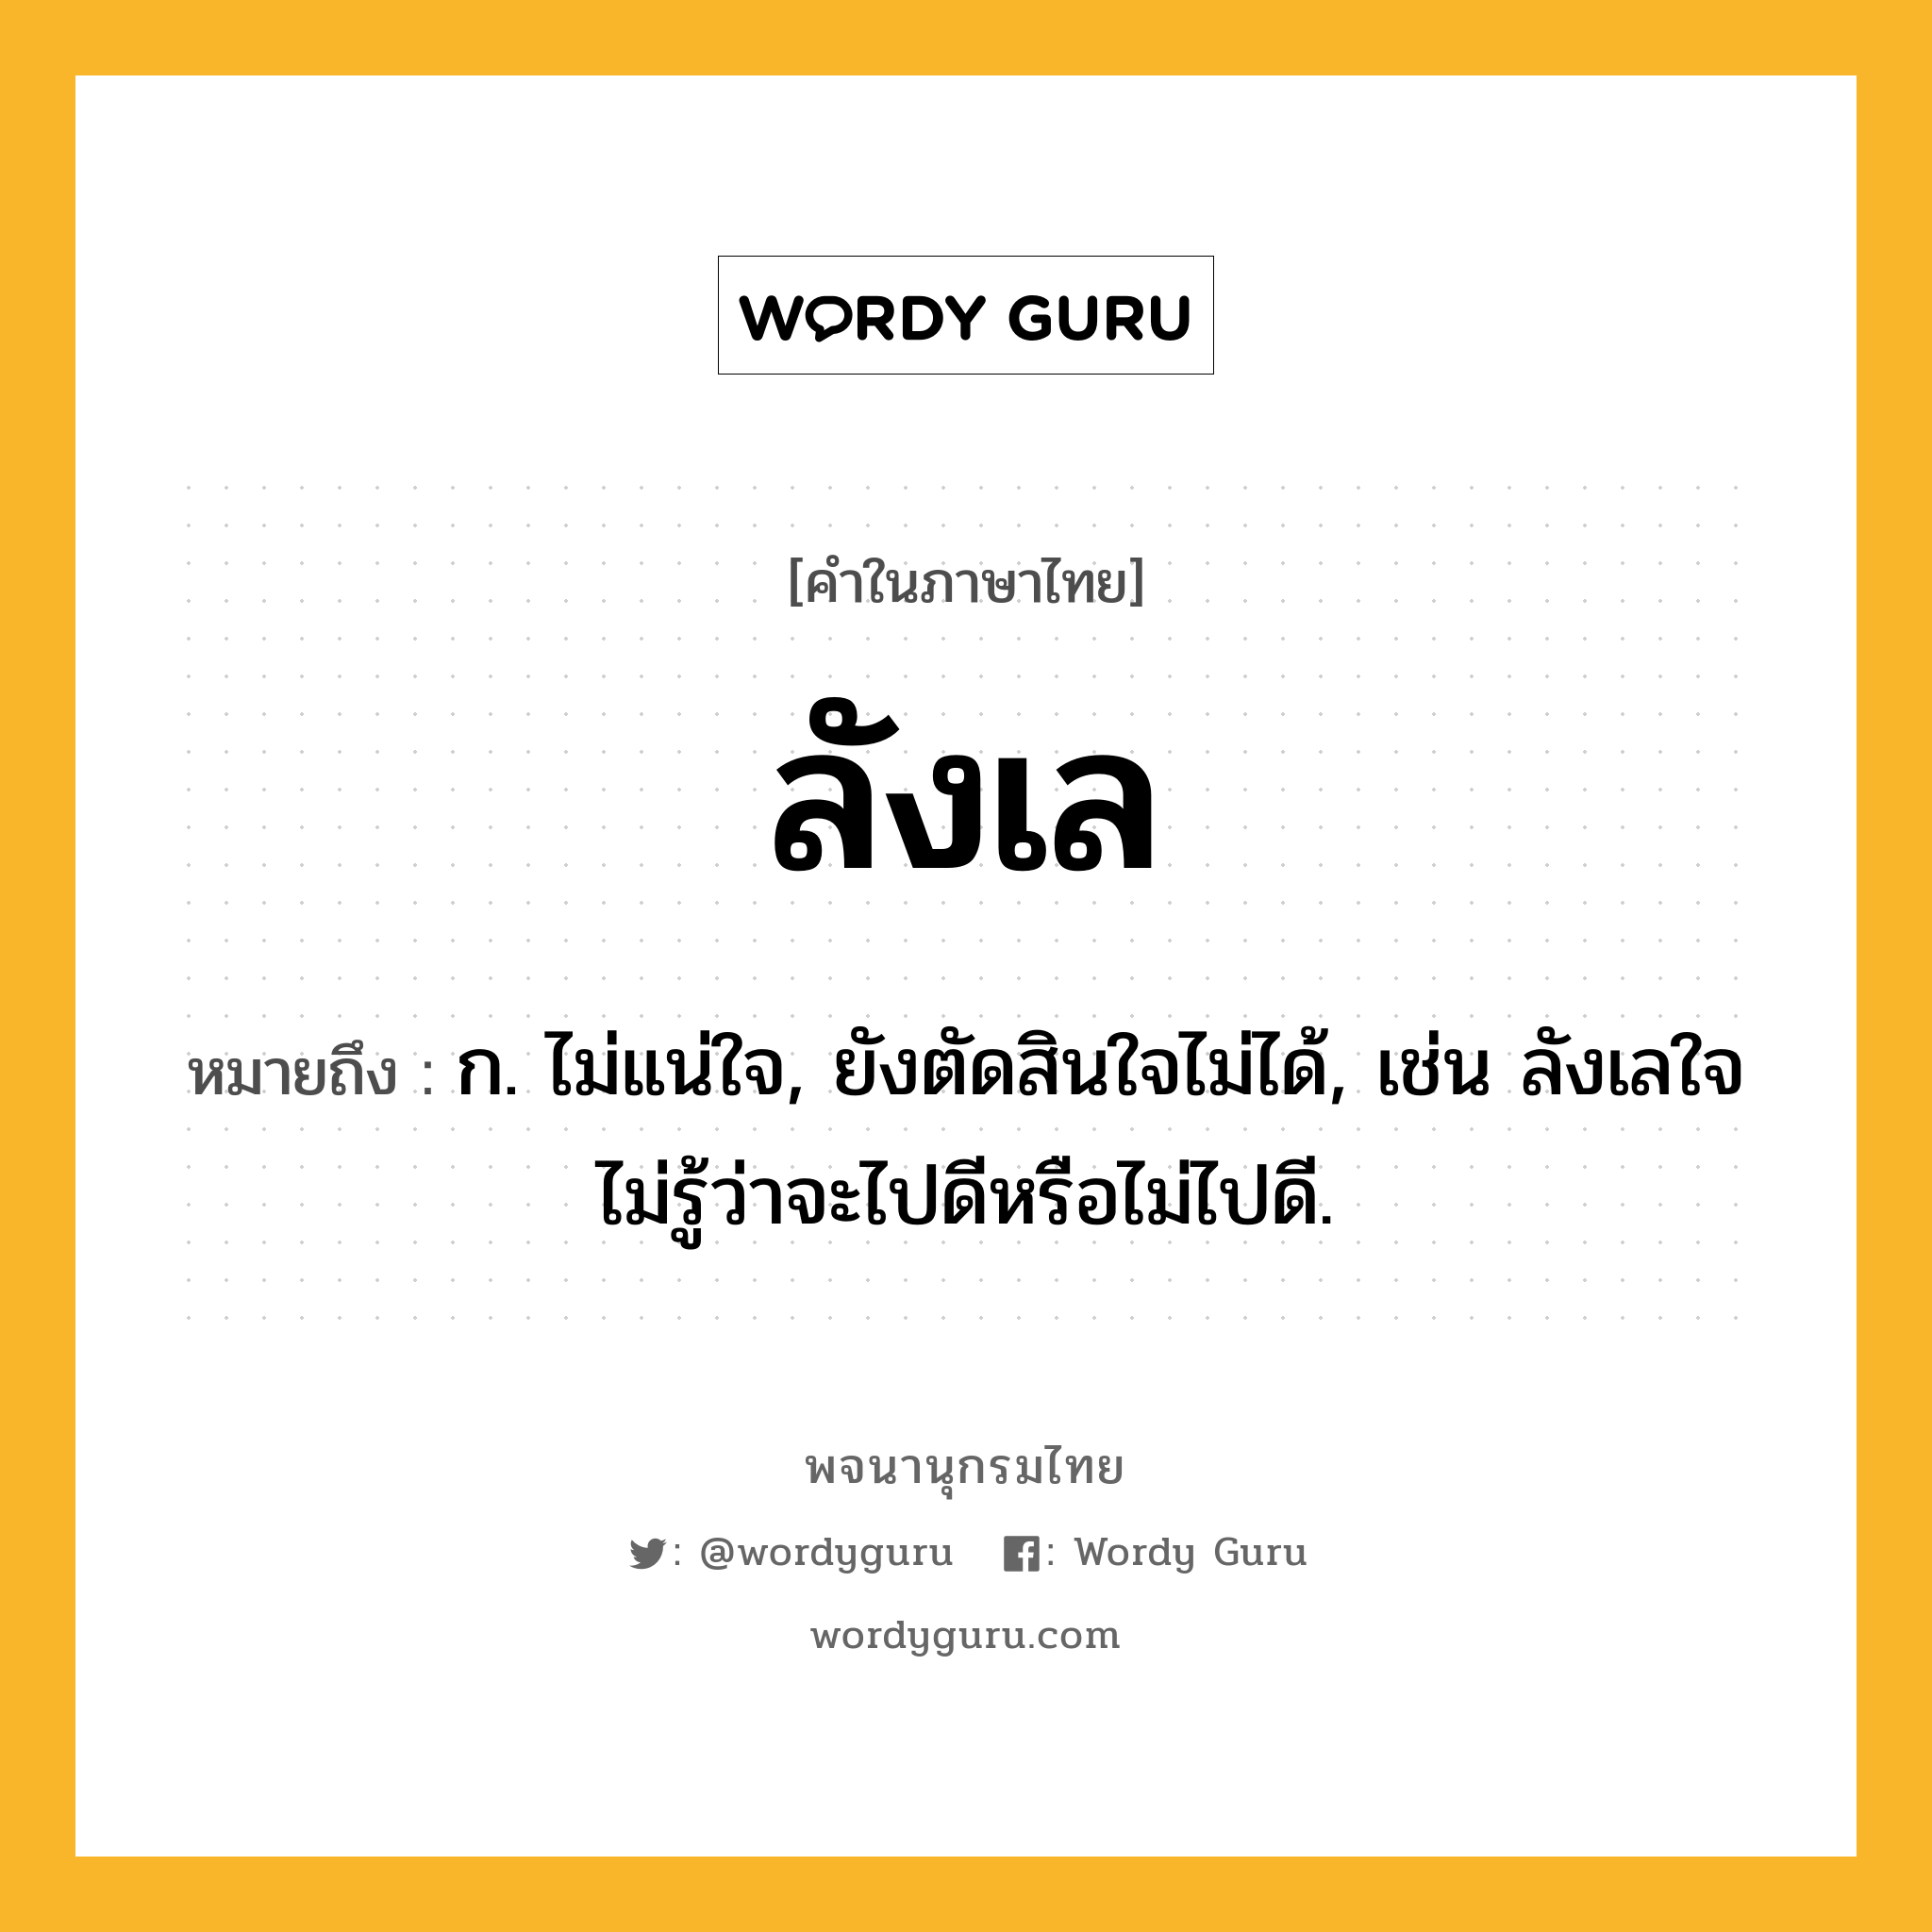 ลังเล หมายถึงอะไร?, คำในภาษาไทย ลังเล หมายถึง ก. ไม่แน่ใจ, ยังตัดสินใจไม่ได้, เช่น ลังเลใจไม่รู้ว่าจะไปดีหรือไม่ไปดี.